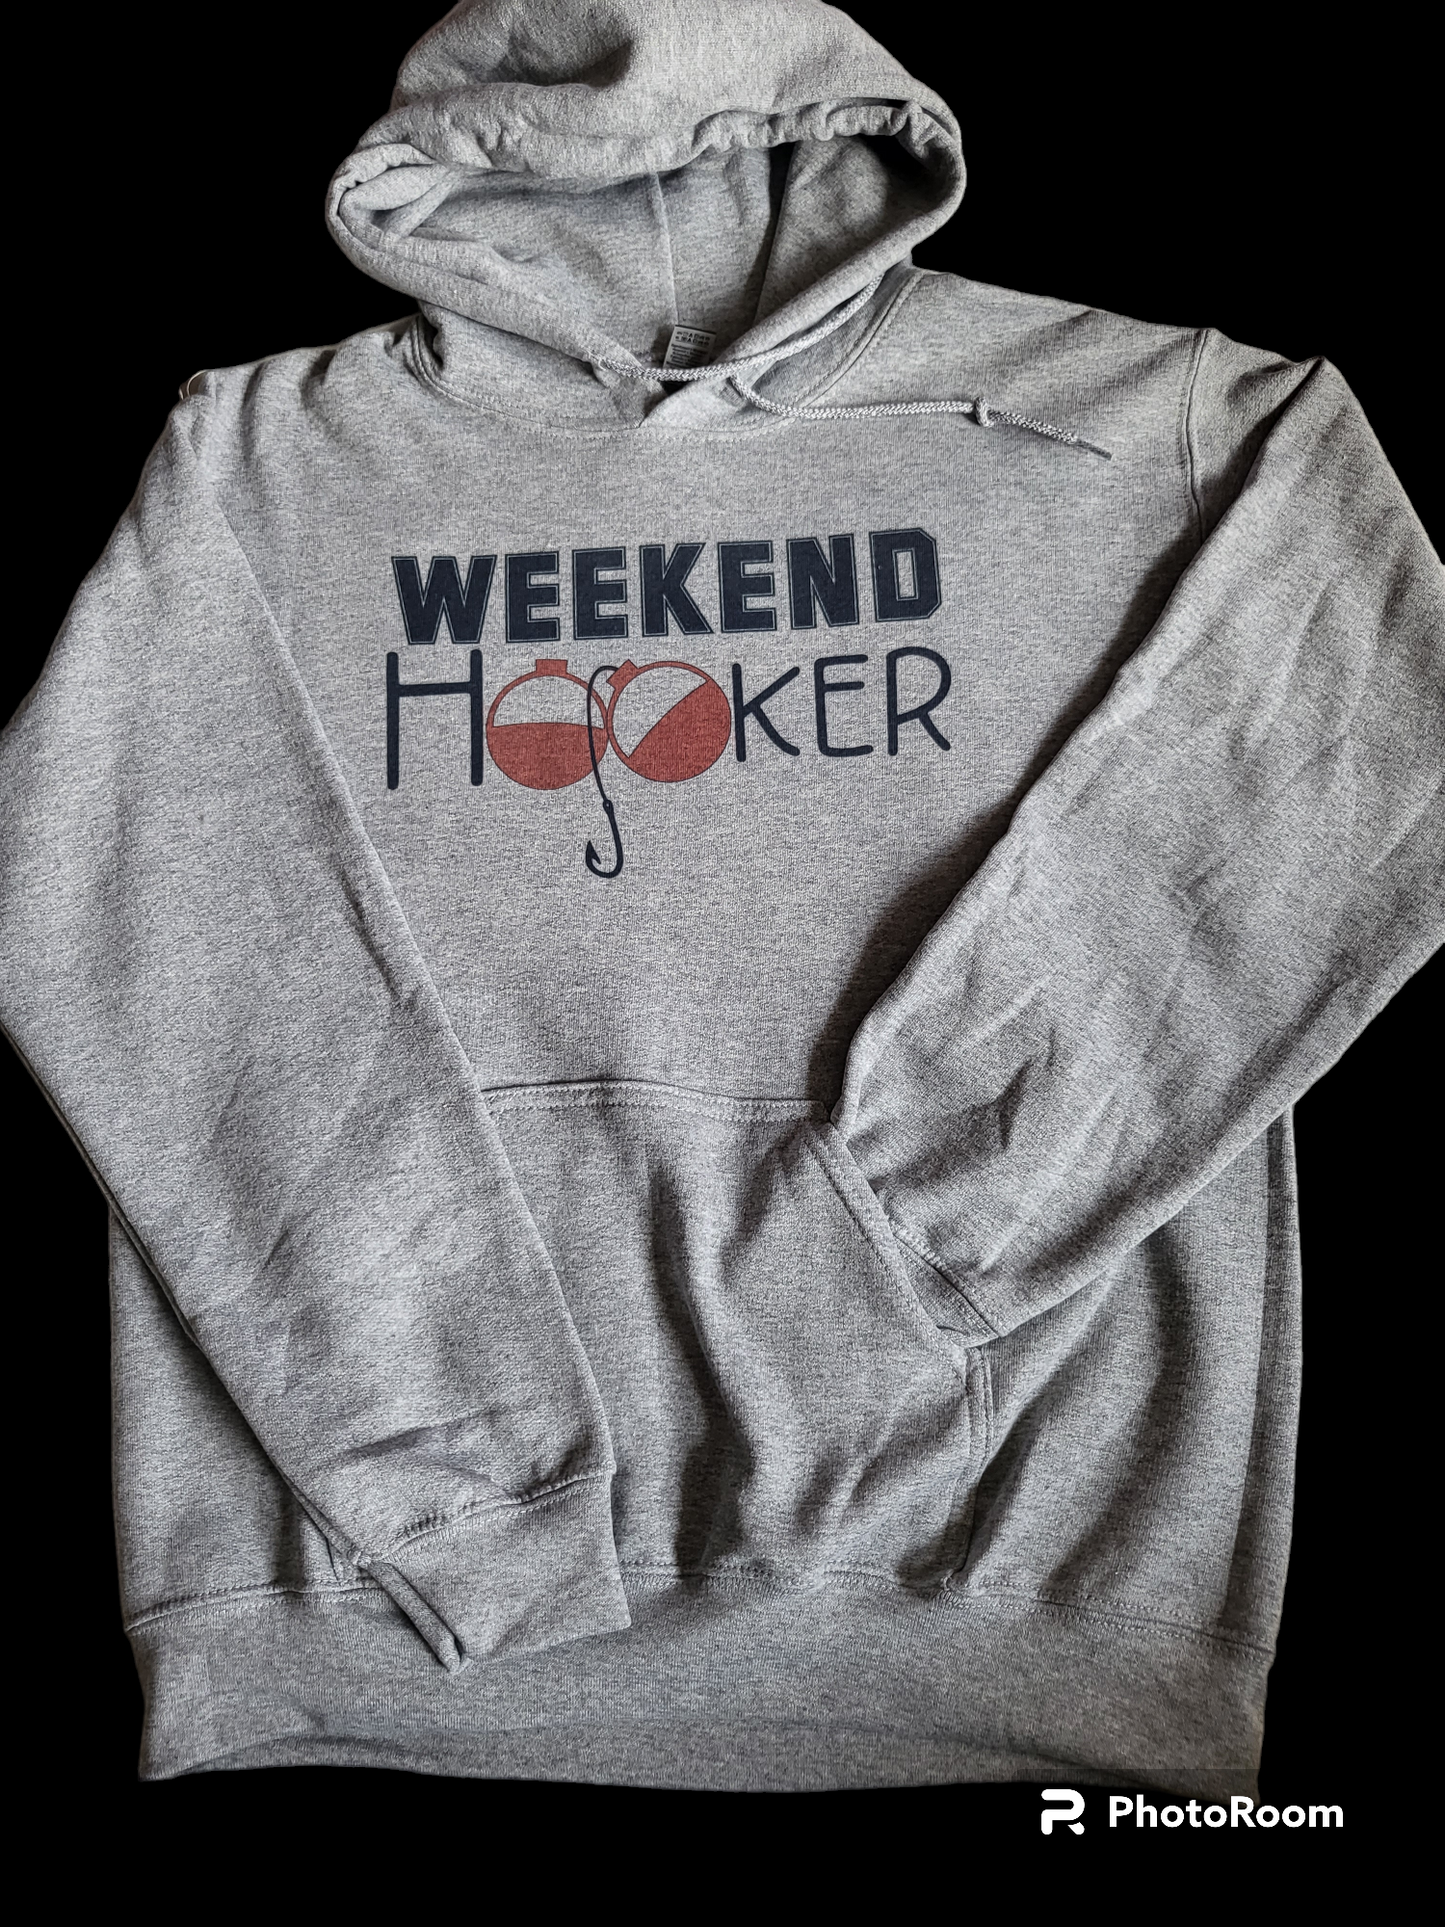 Weekend Hooker hoodies